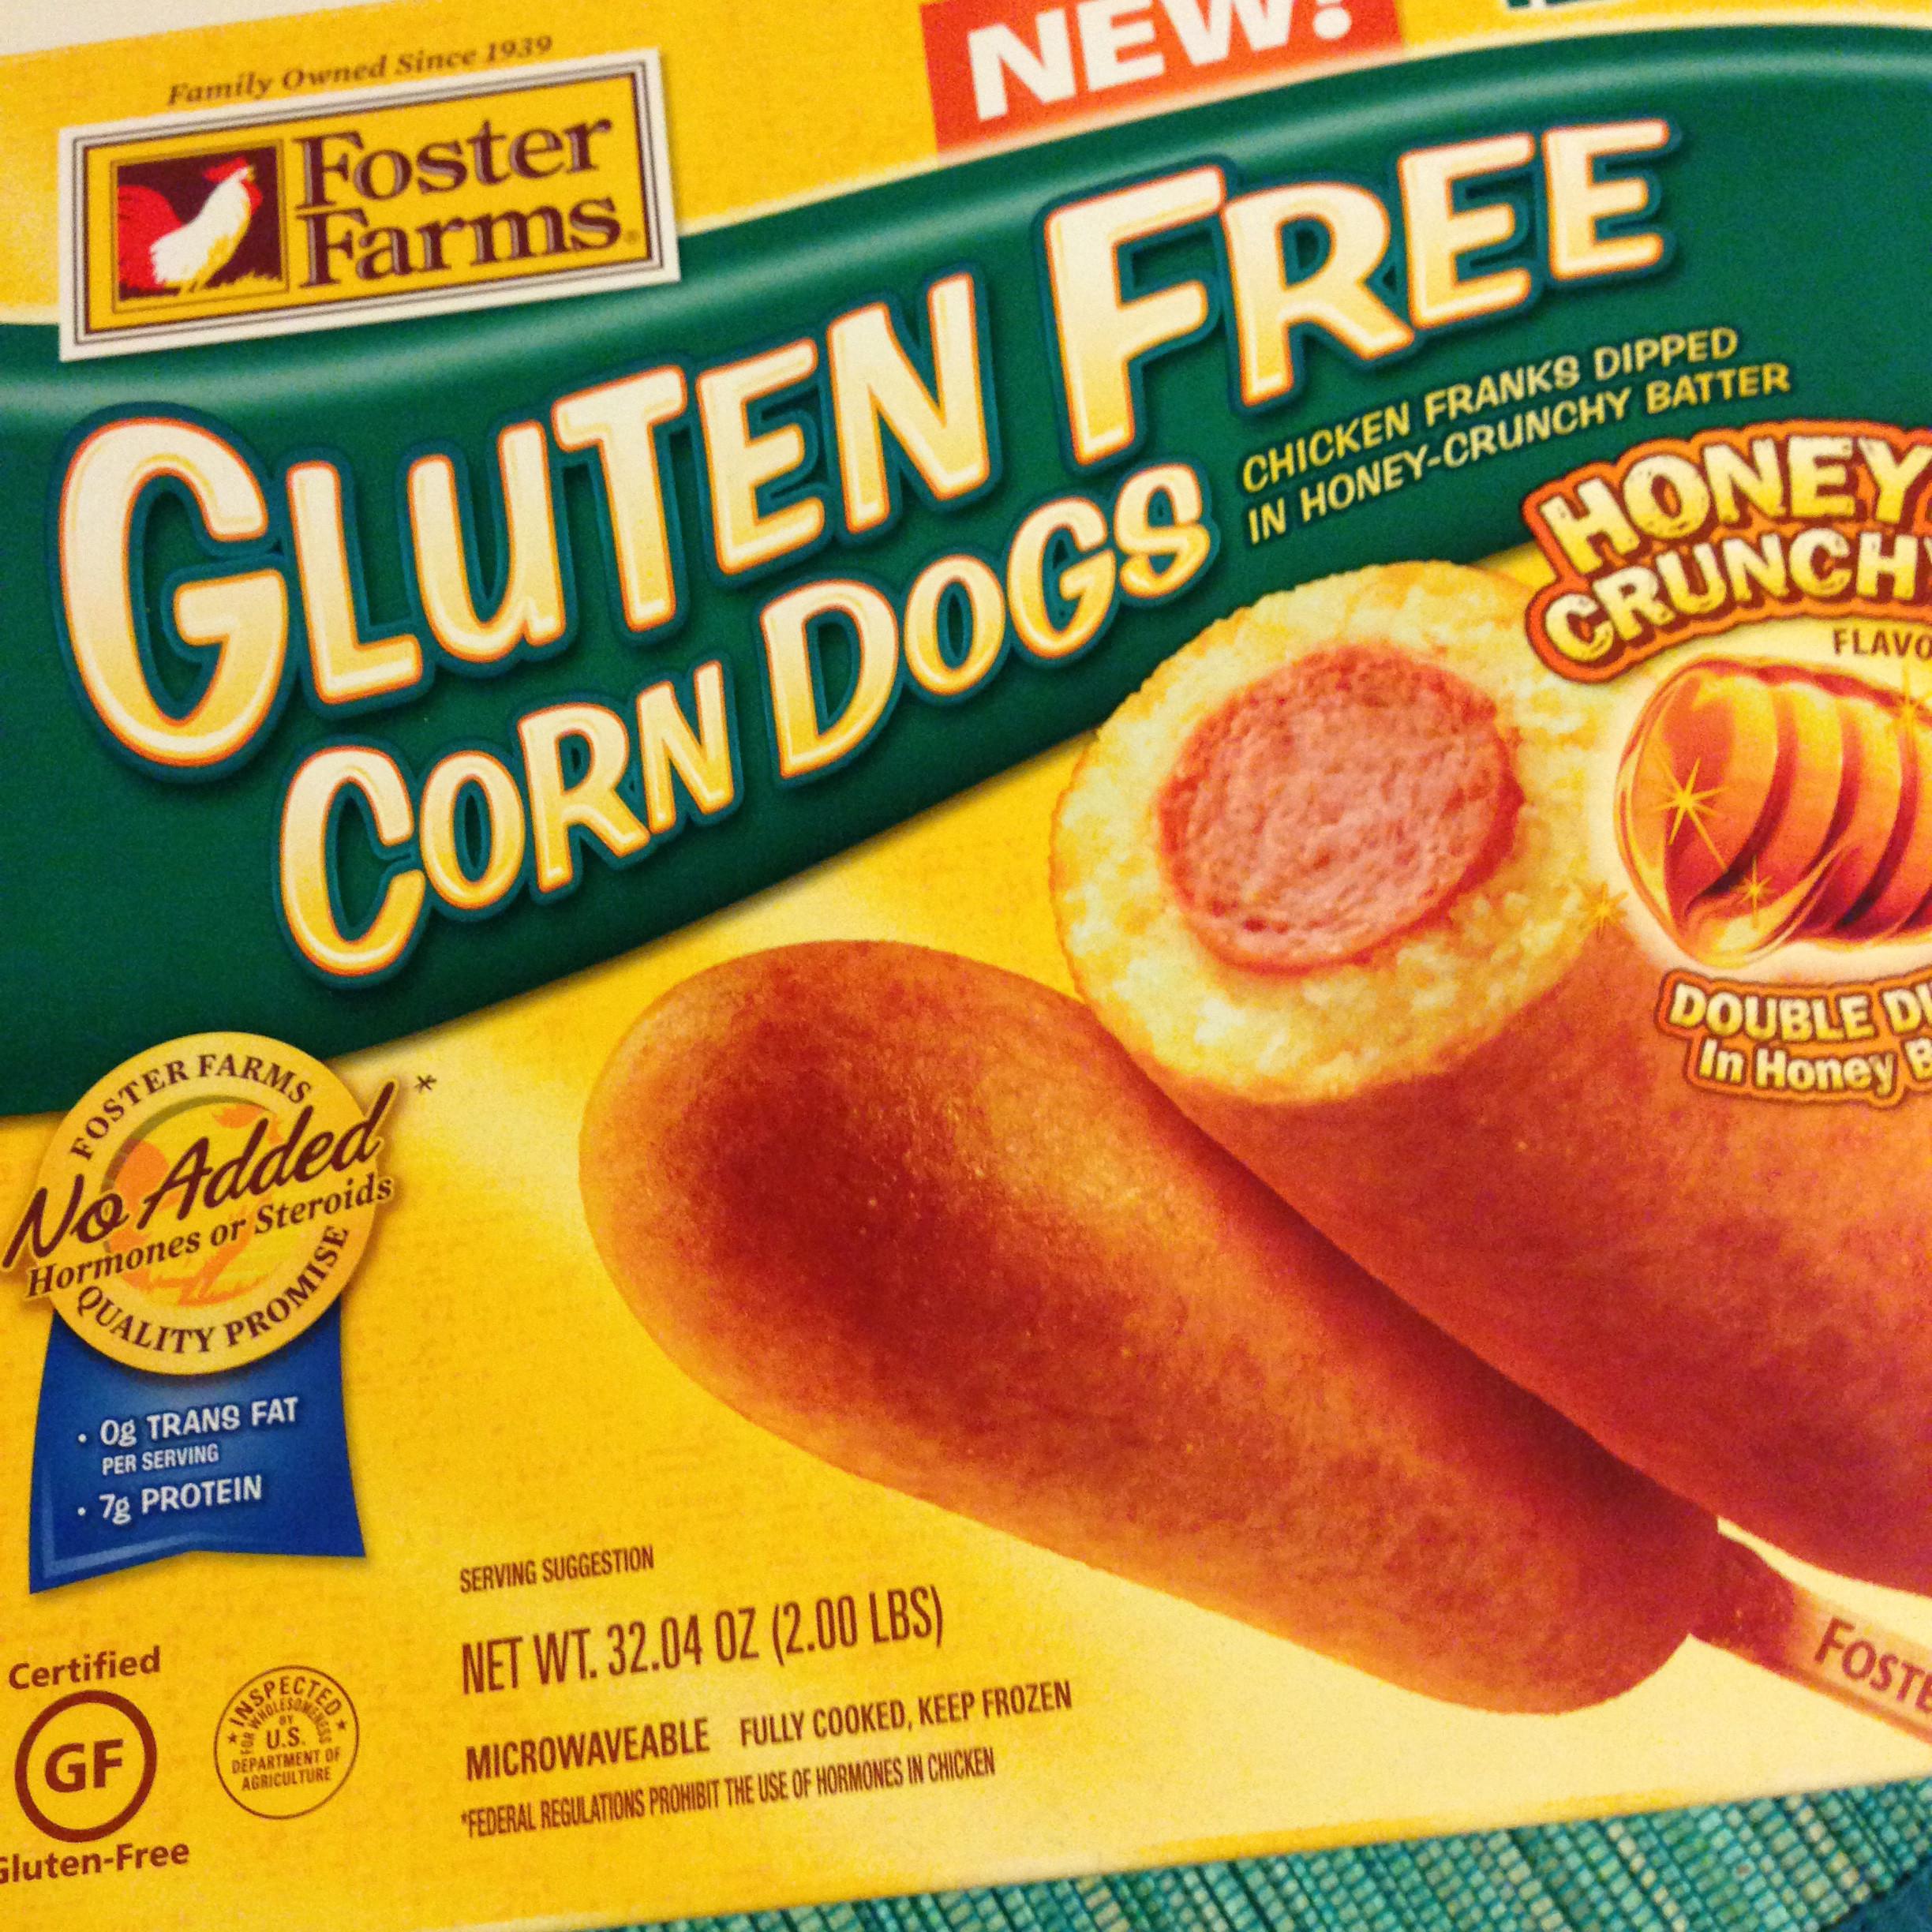 Gluten Free Corn Dogs Best Of Foster Farms Gluten Free Corn Dogs G Free Laura